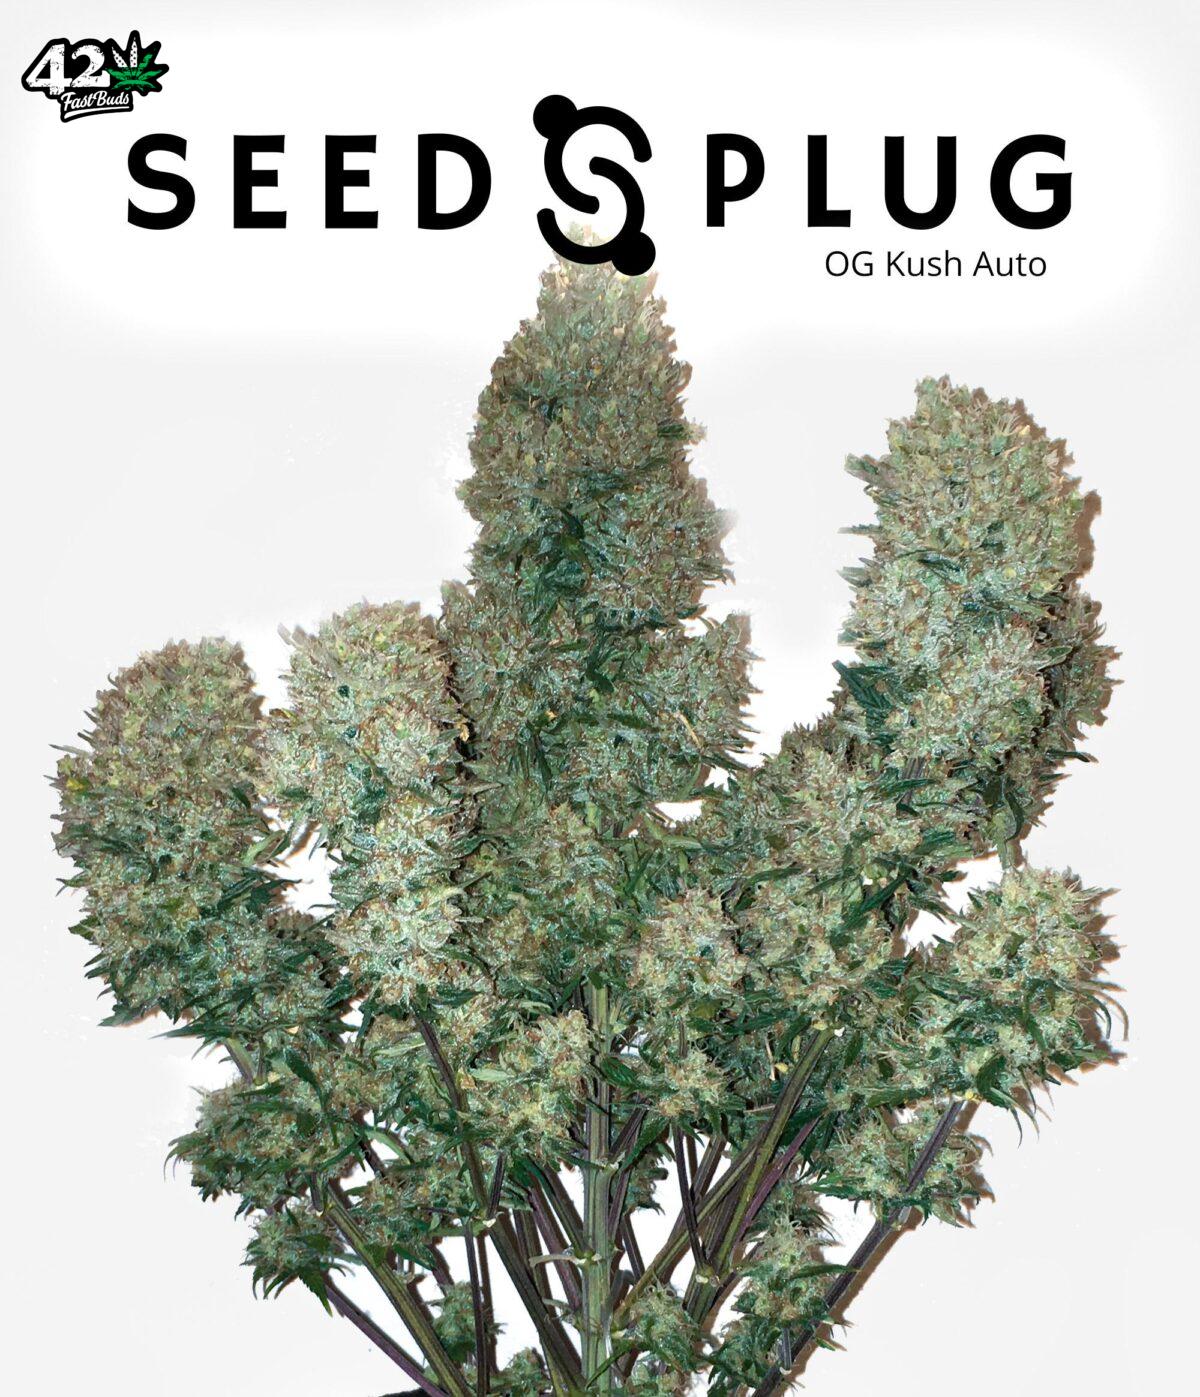 OG Kush Auto | SeedsPlug